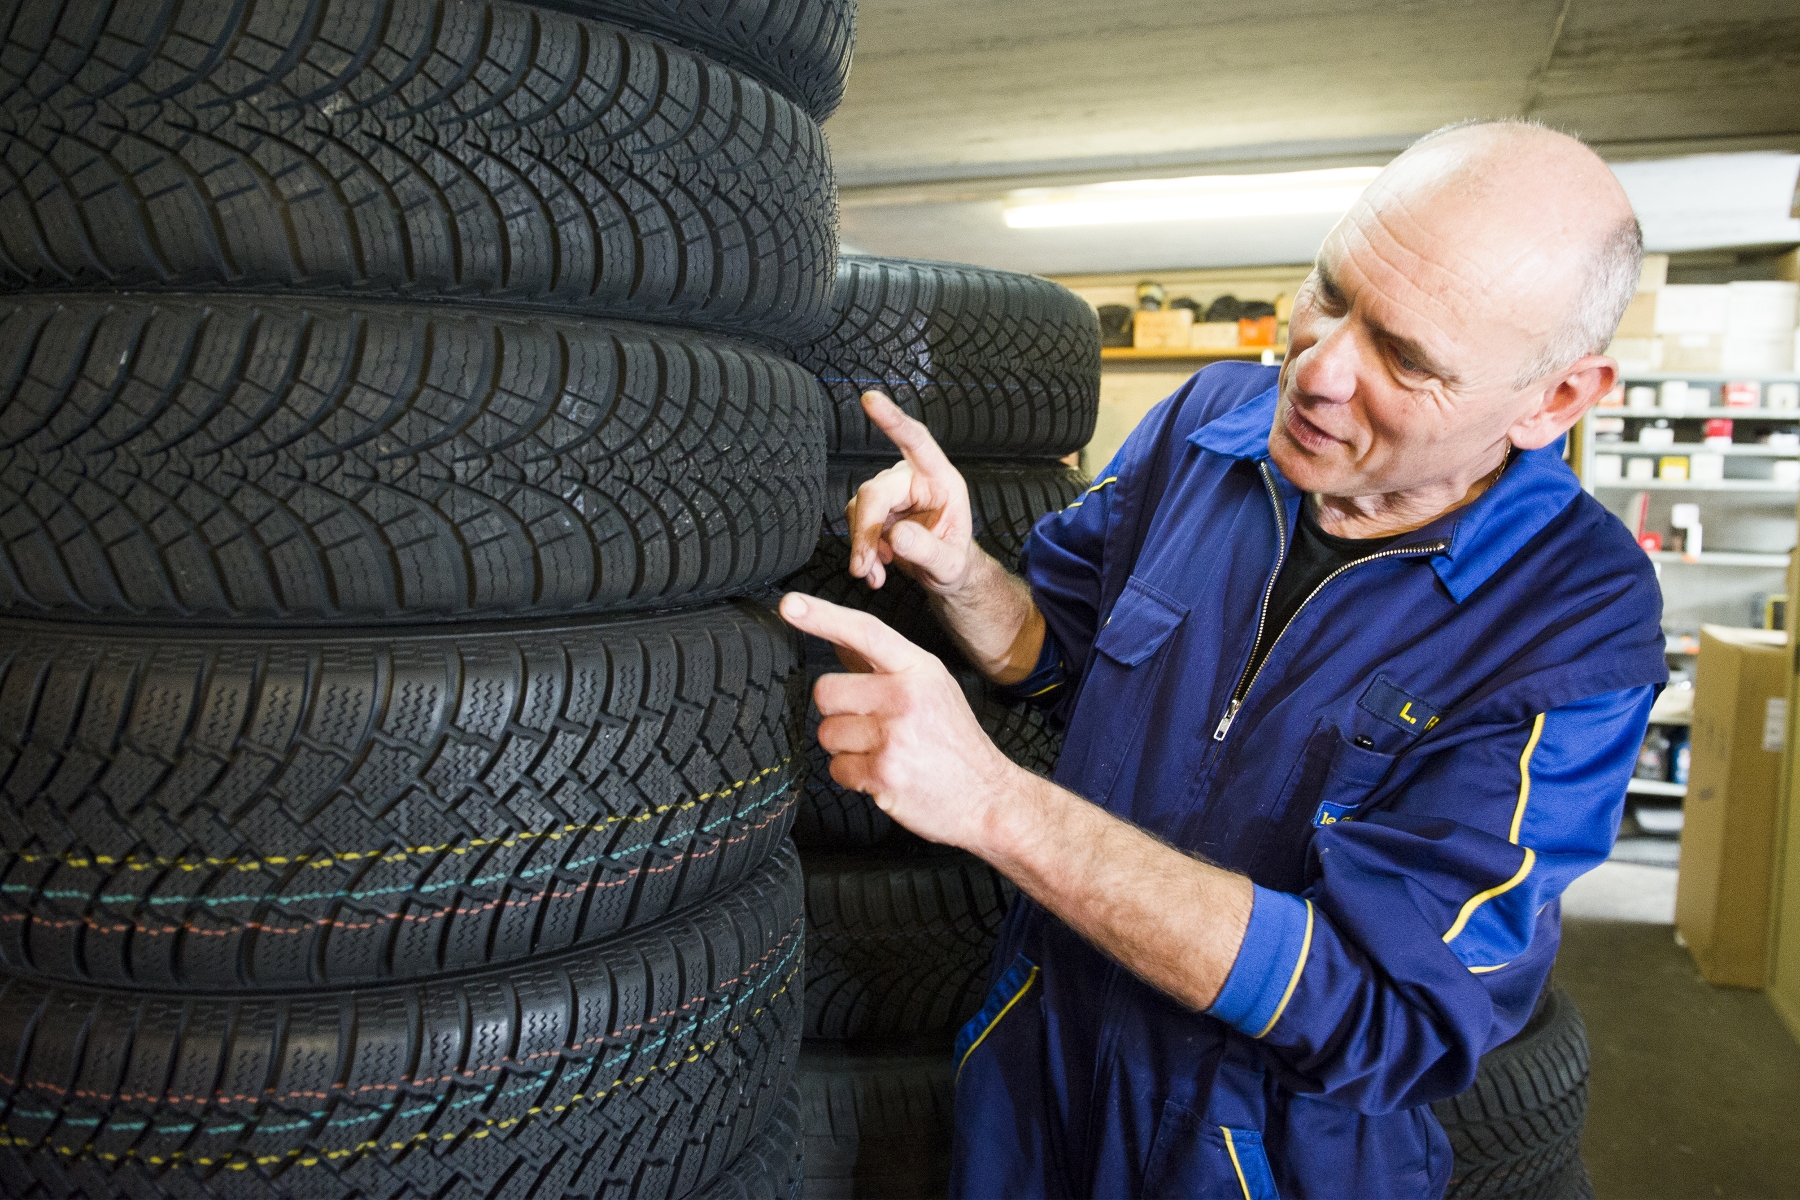 Luciano Ruffini, du garage Saint-Martin à Leytron, incite les conducteurs à faire poser les pneus d'hiver dès que les températures atteignent 7 degrés et moins le matin.